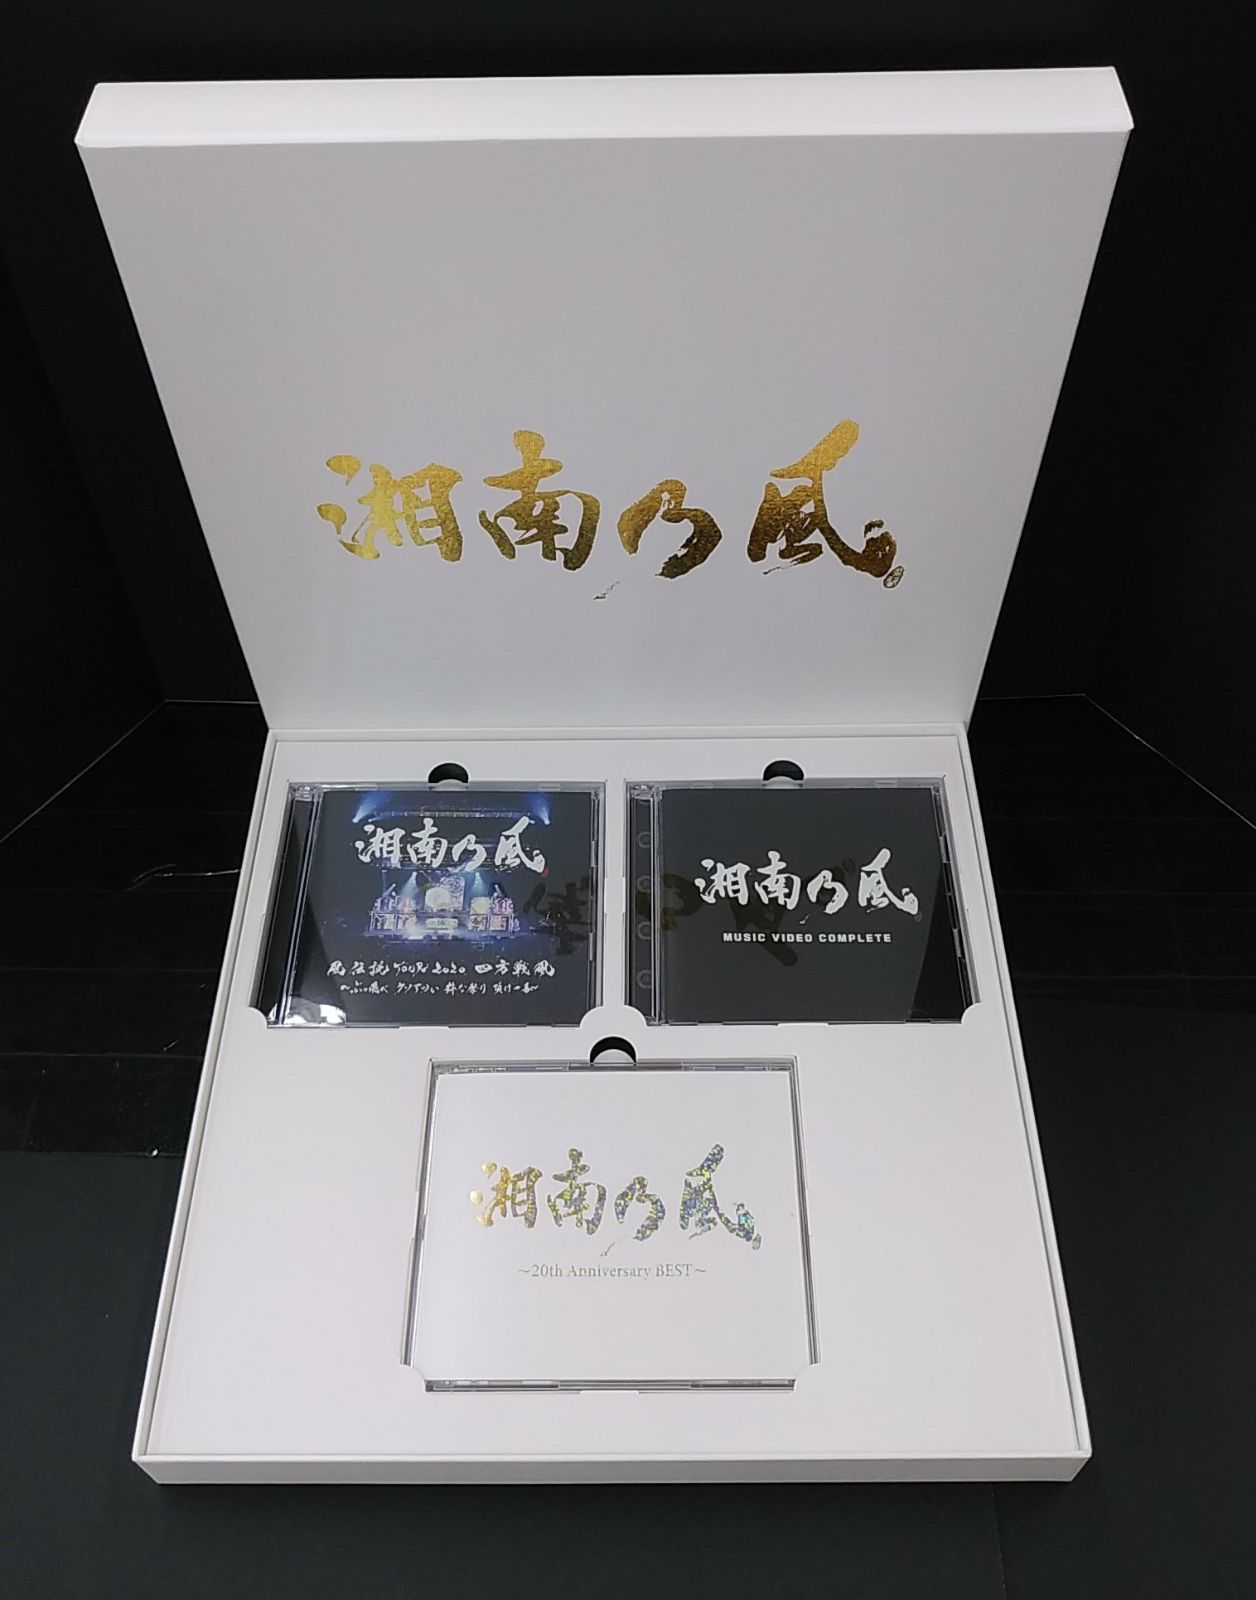 湘南乃風 / 湘南乃風-20th Anniversary BEST- PREMIUM BOX DVD付受注 